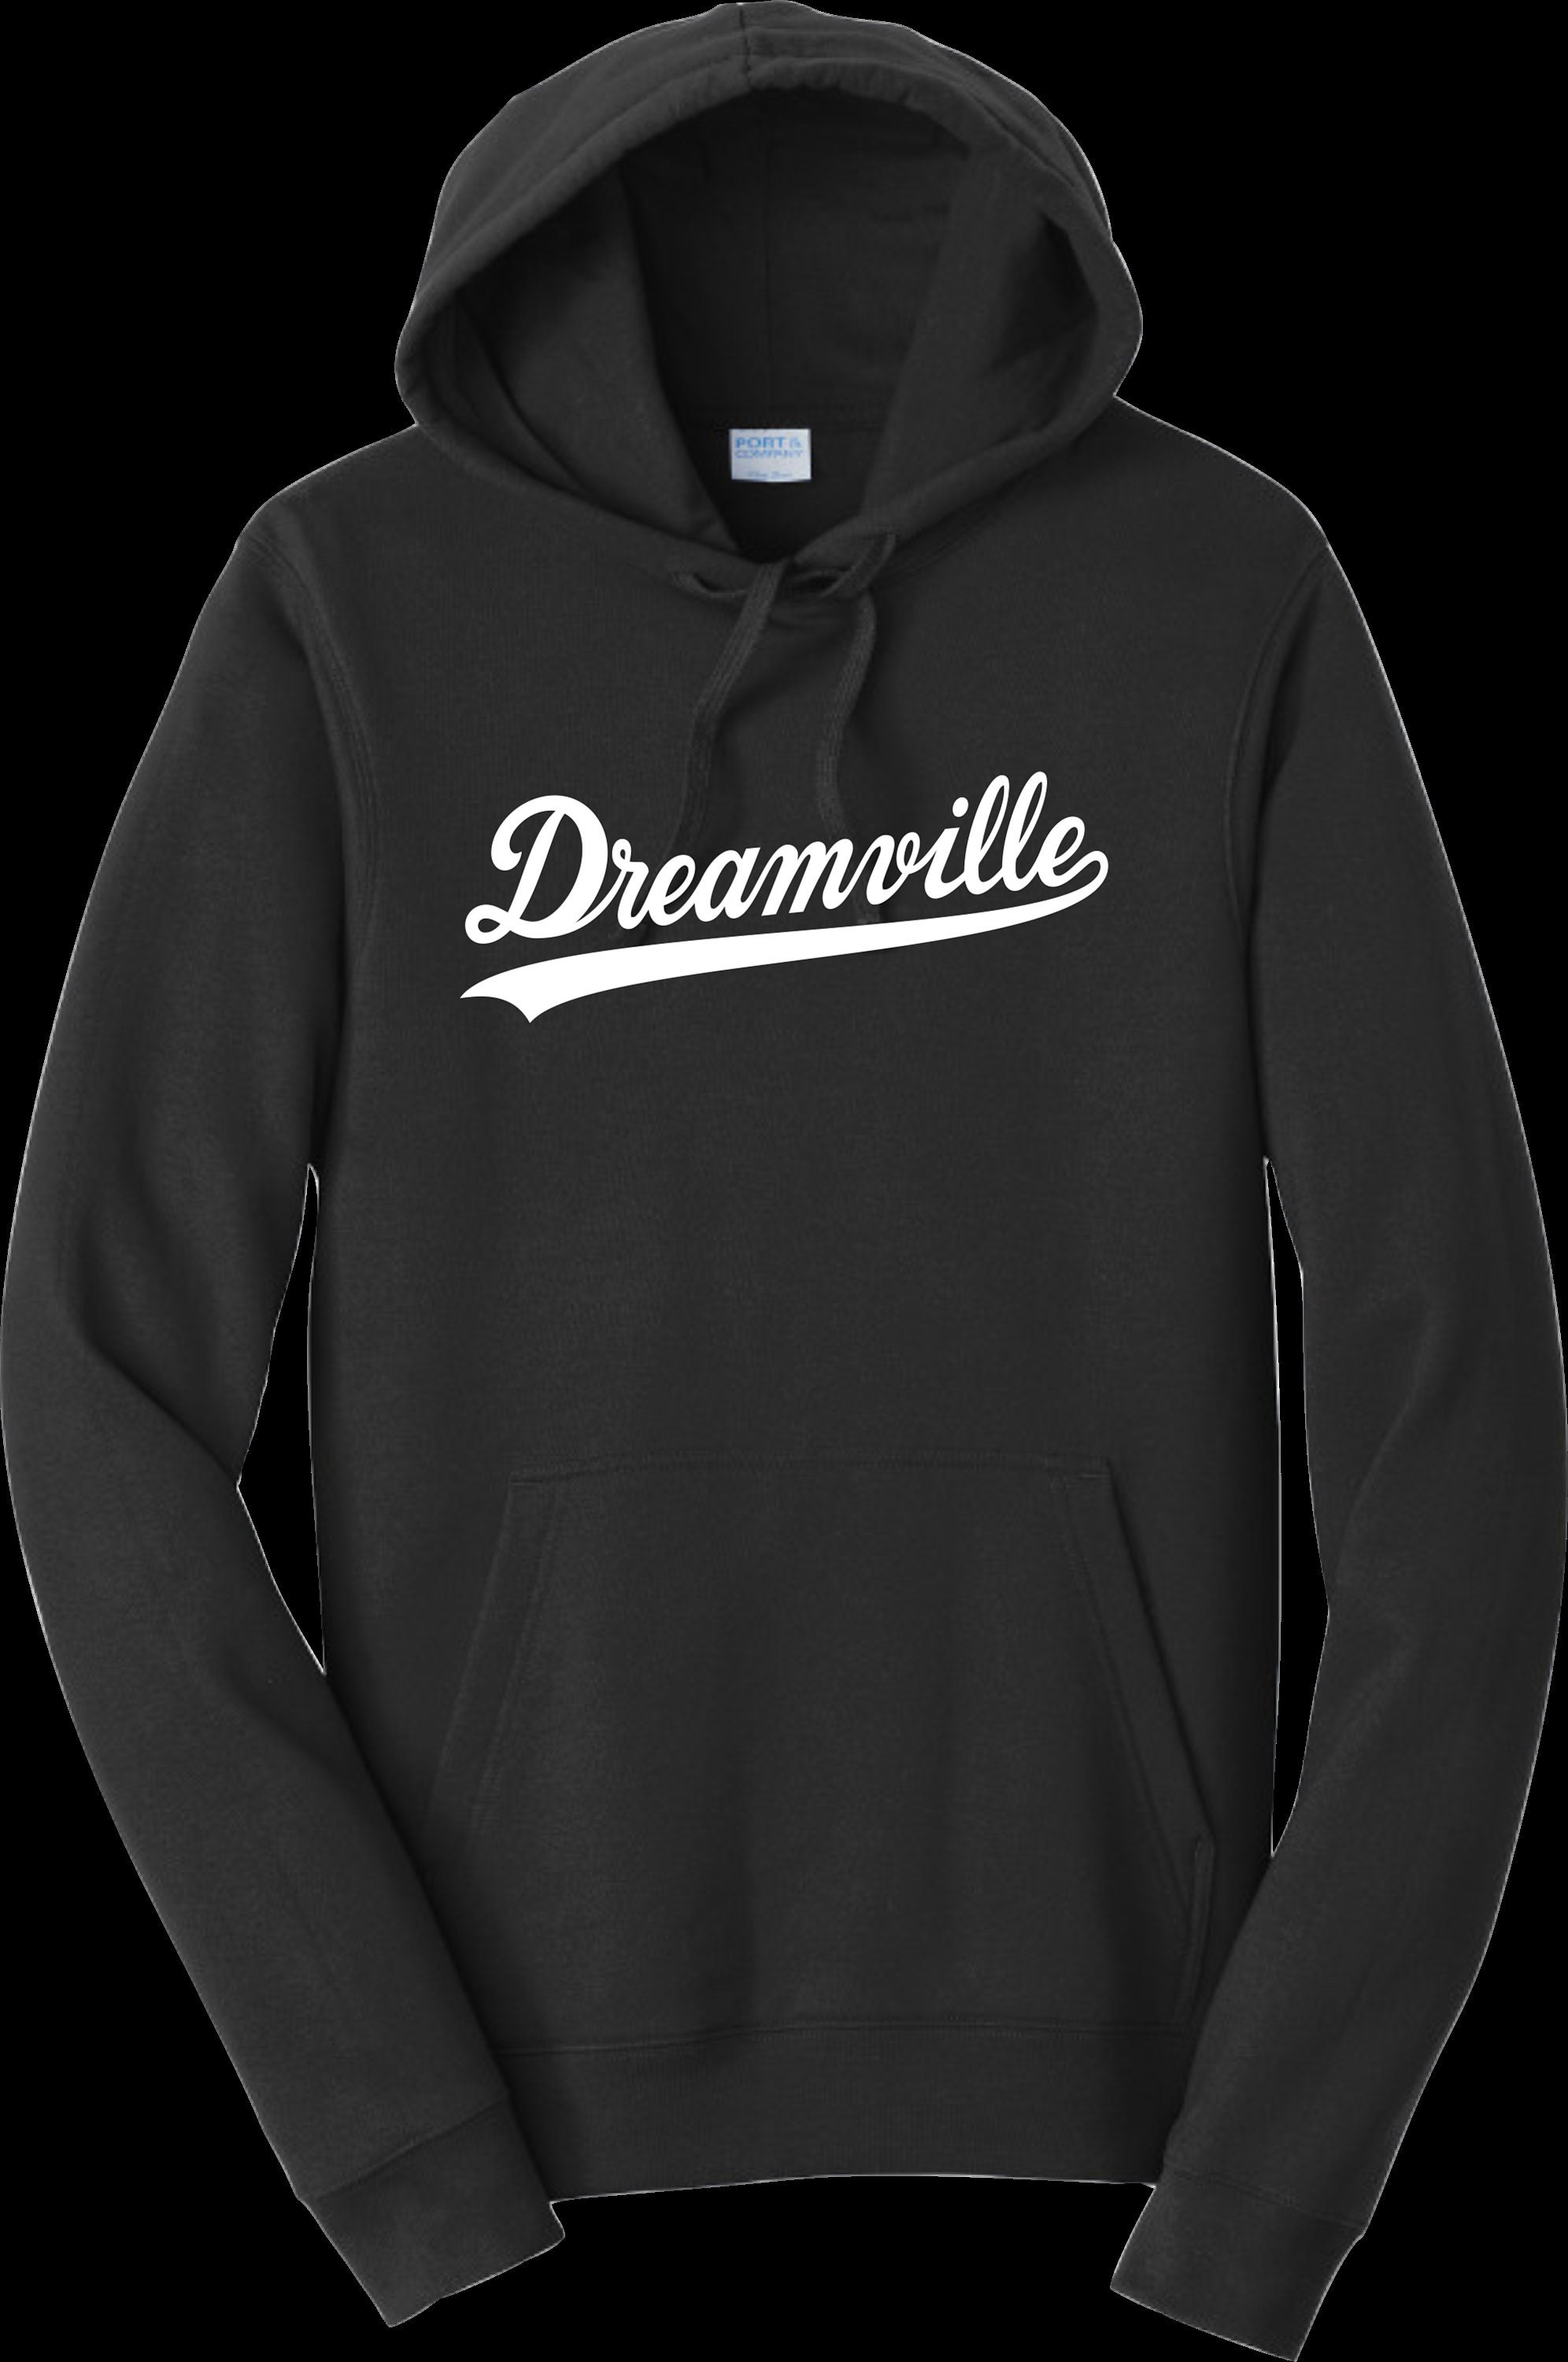 Dreamville Records Hoodie Sweatshirt | Etsy